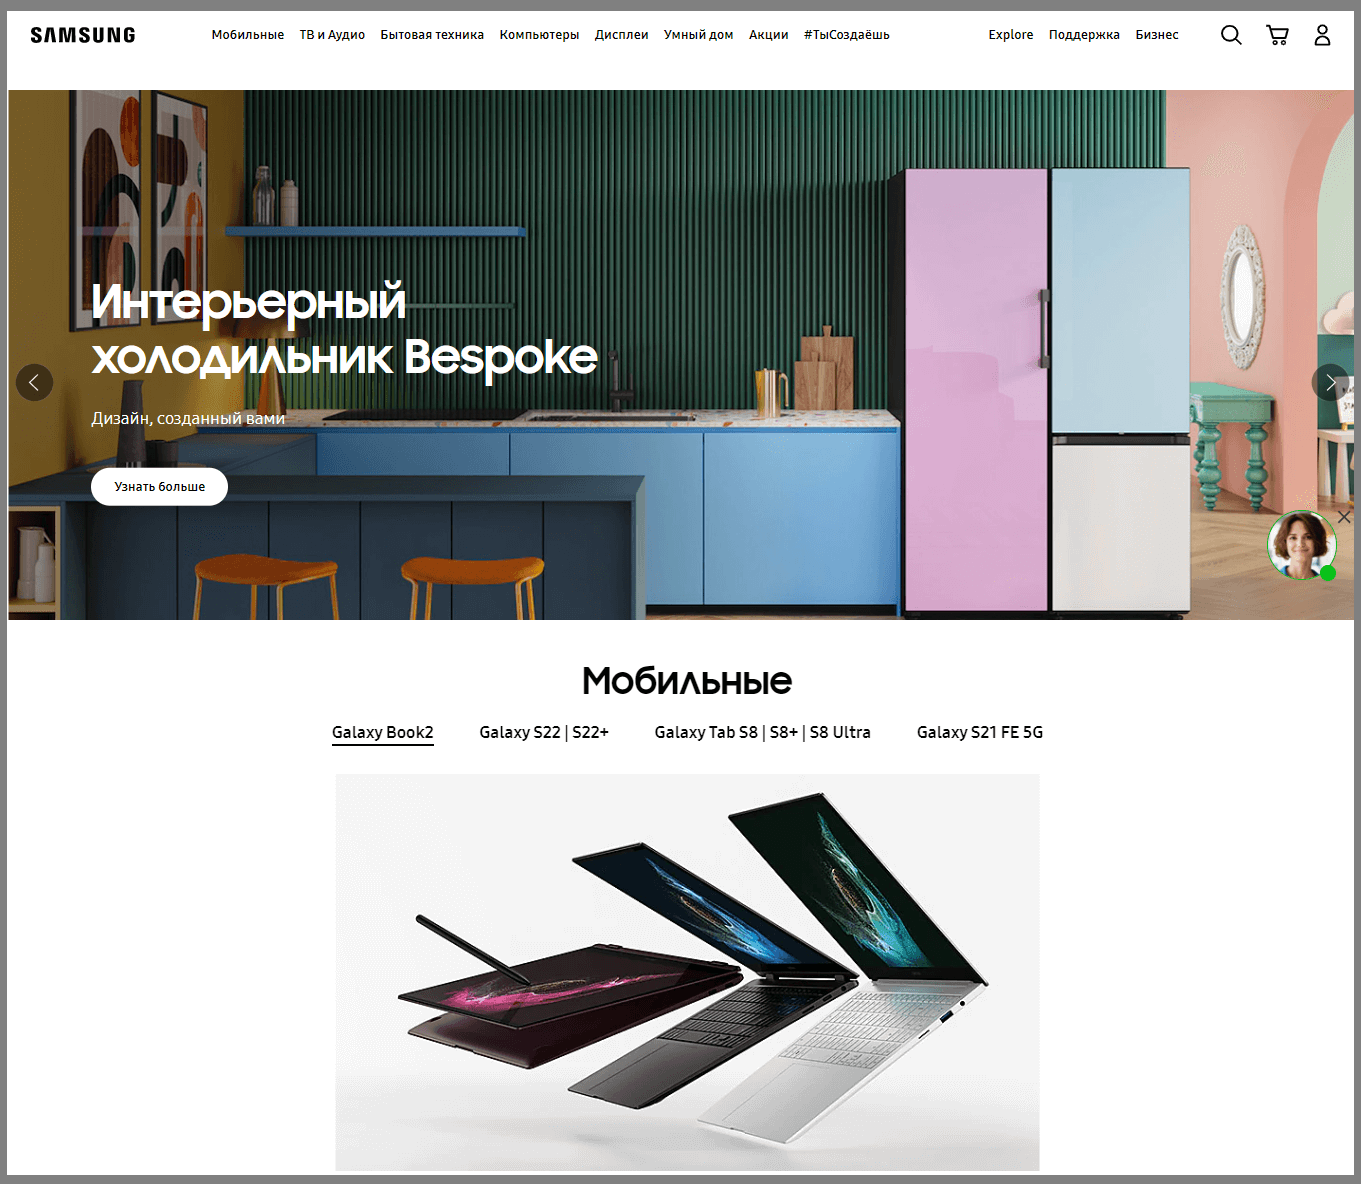 дизайн главной страницы сайта Samsung